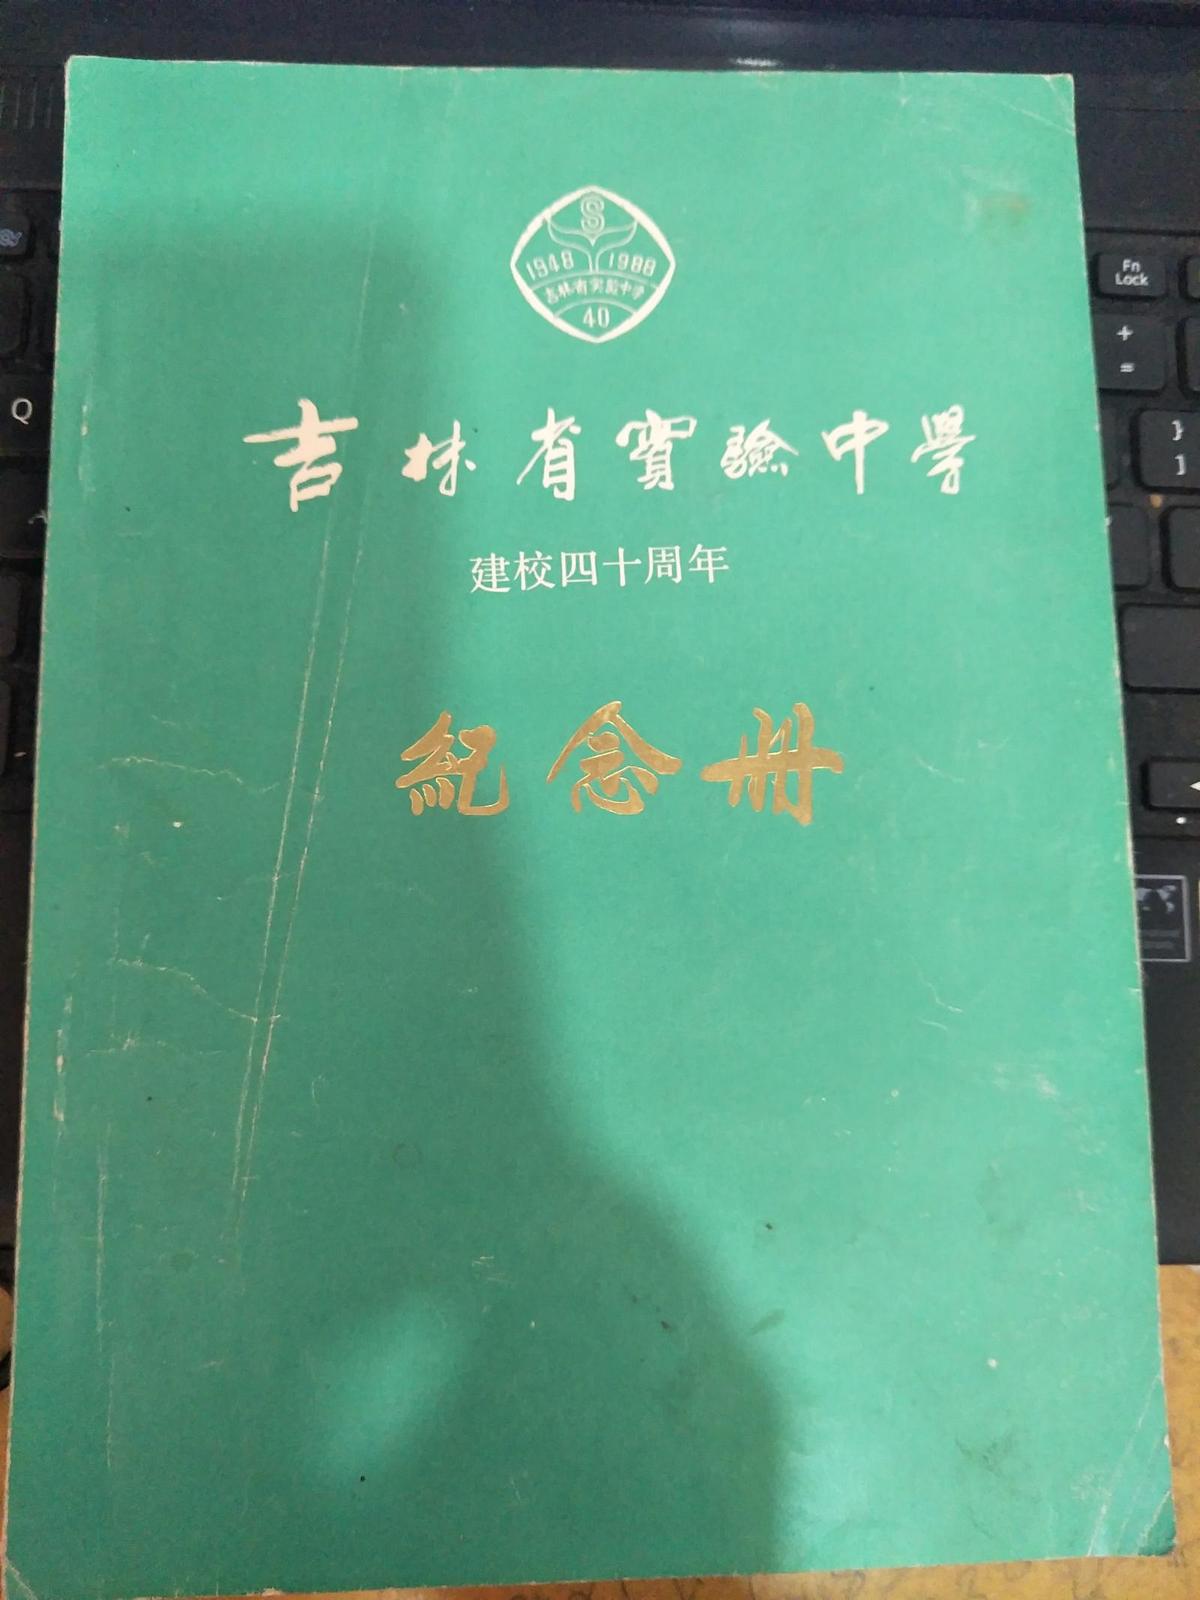 吉林省实验中学建校四十周年 纪念册